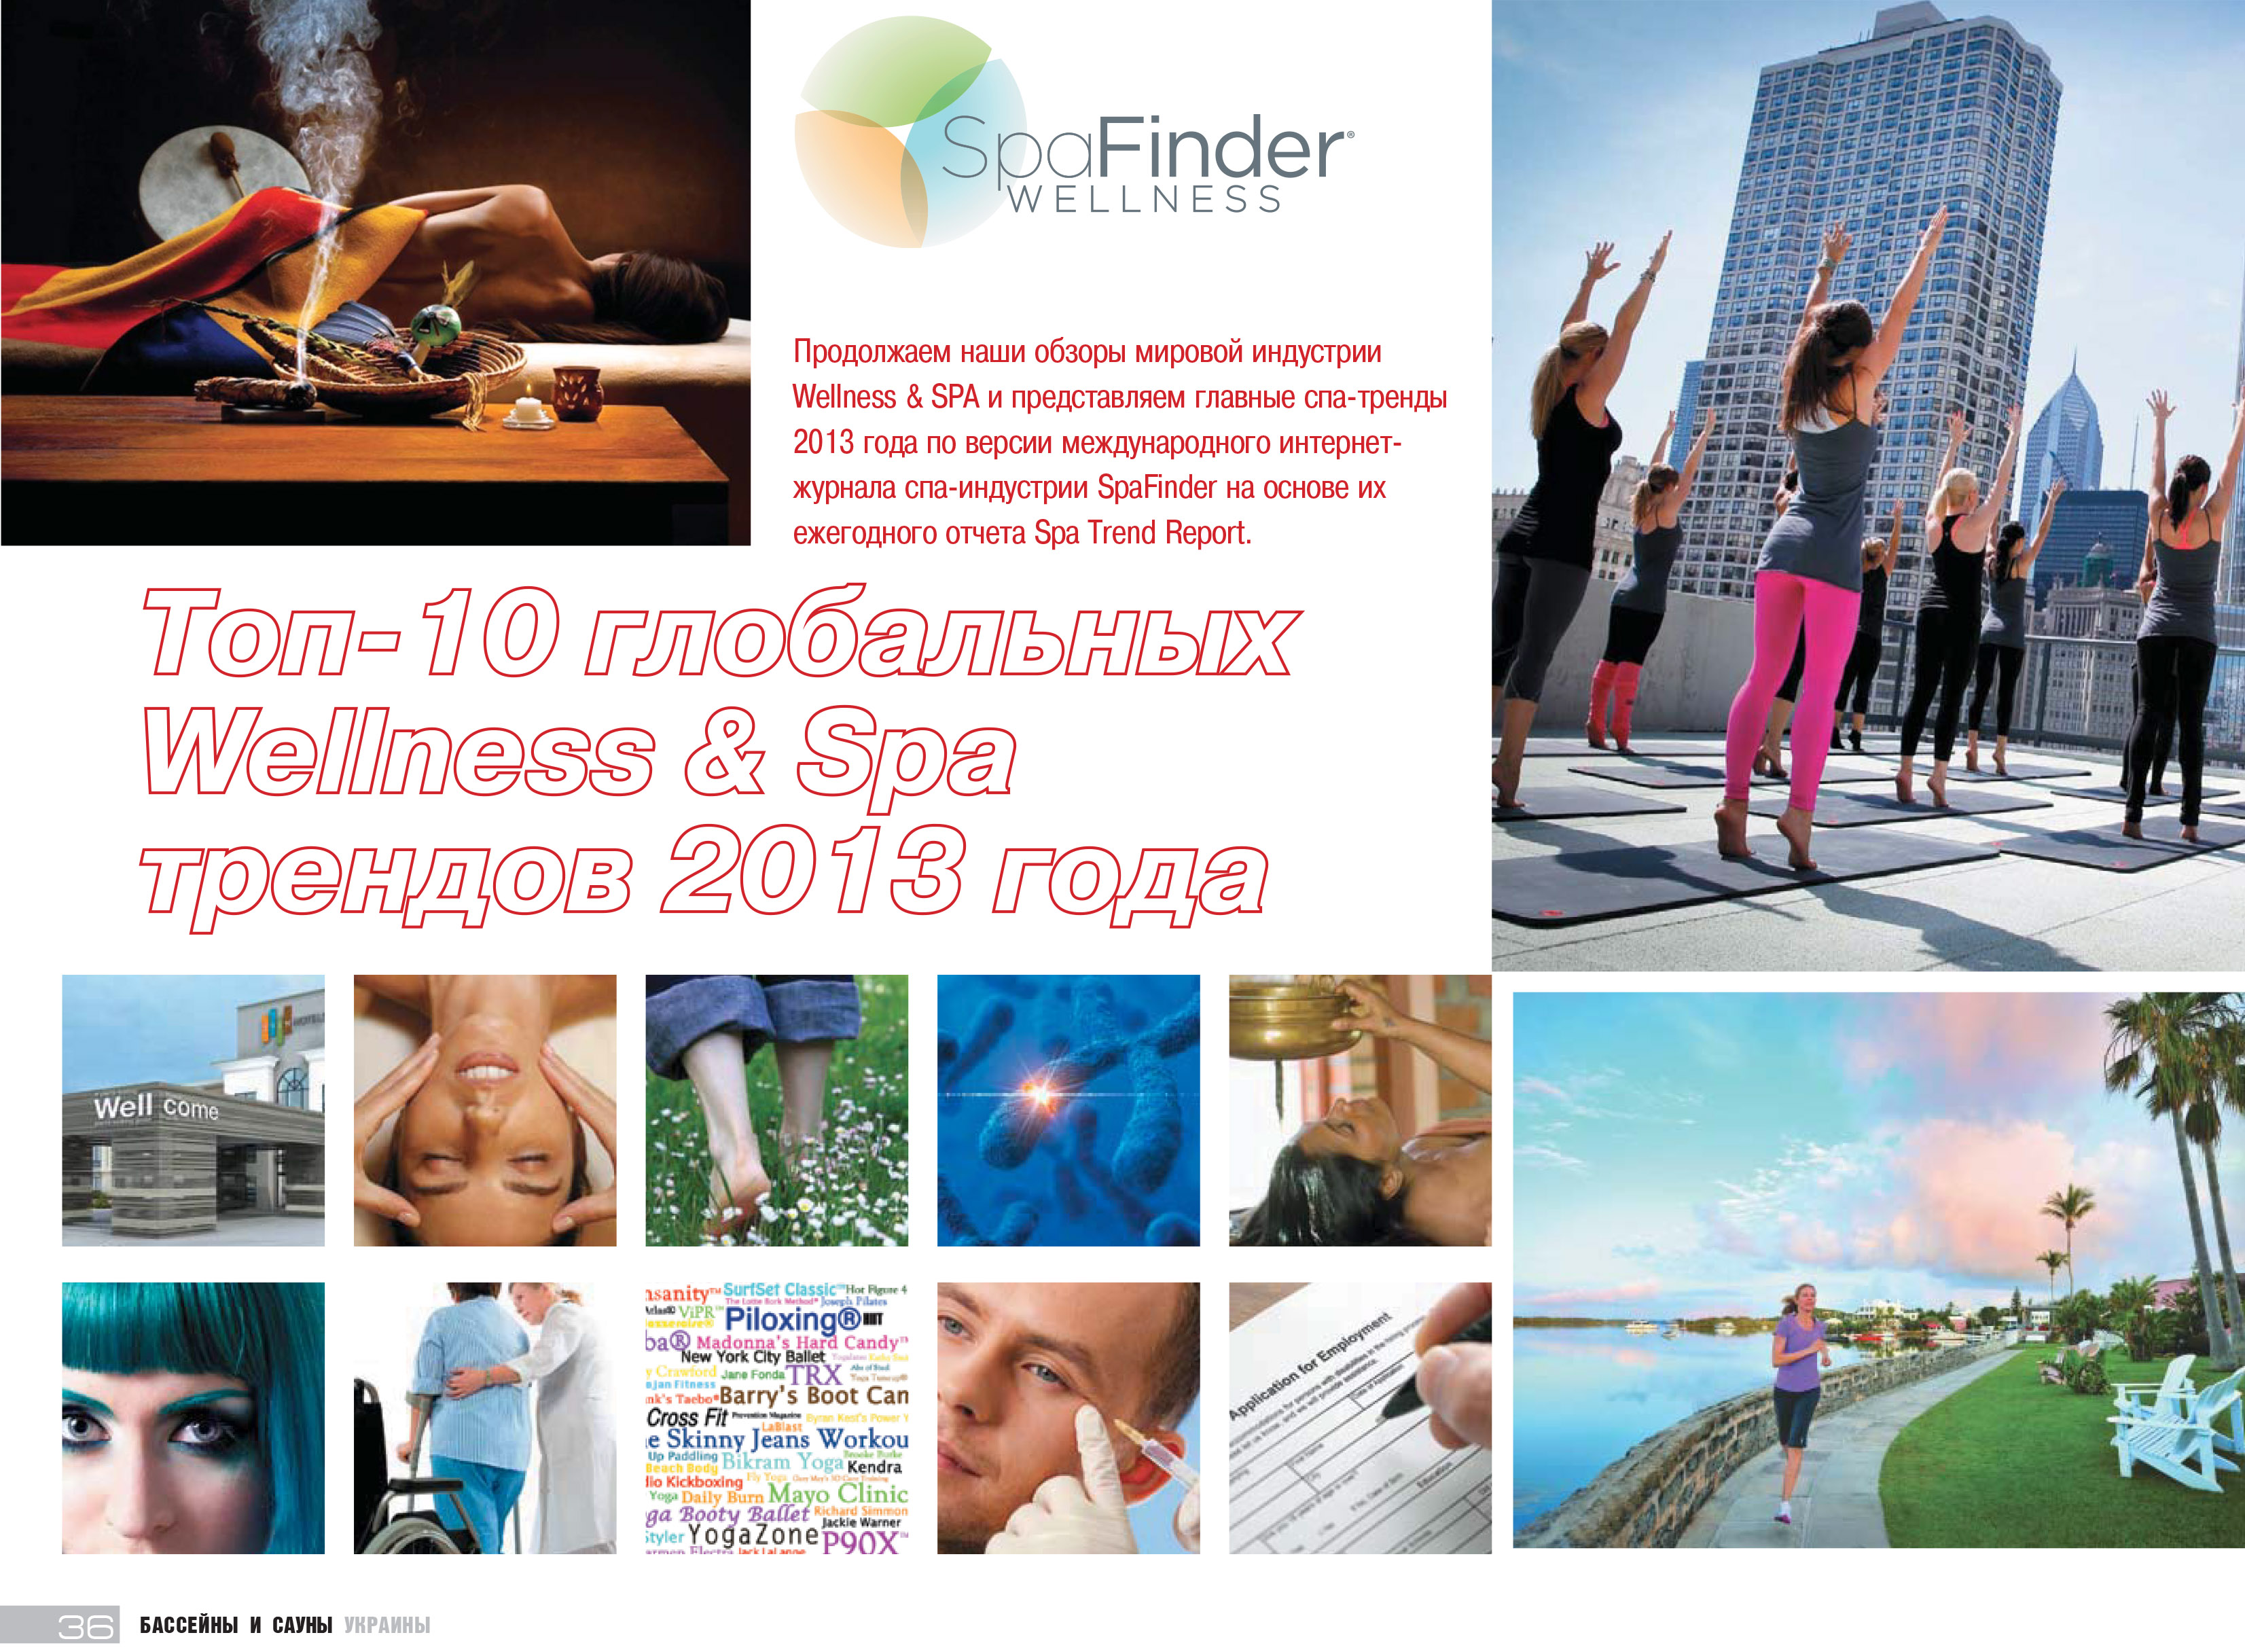 -10 Wellness & Spa  2013